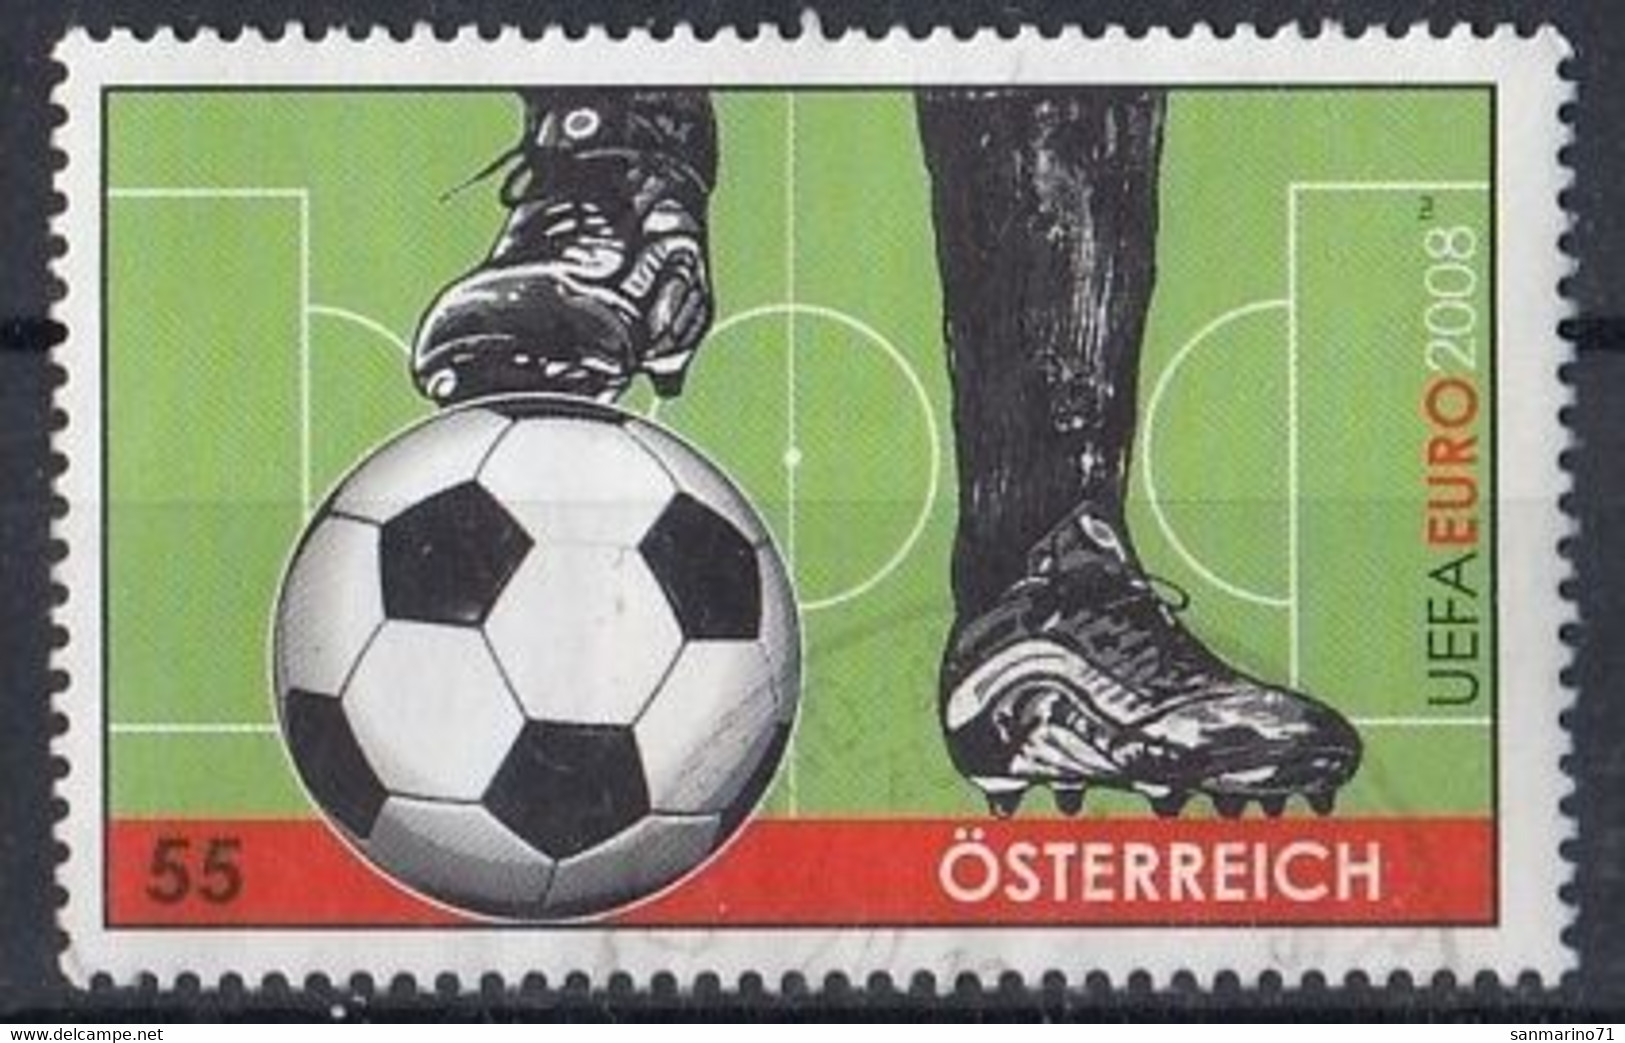 AUSTRIA 2723,used,football - Usati